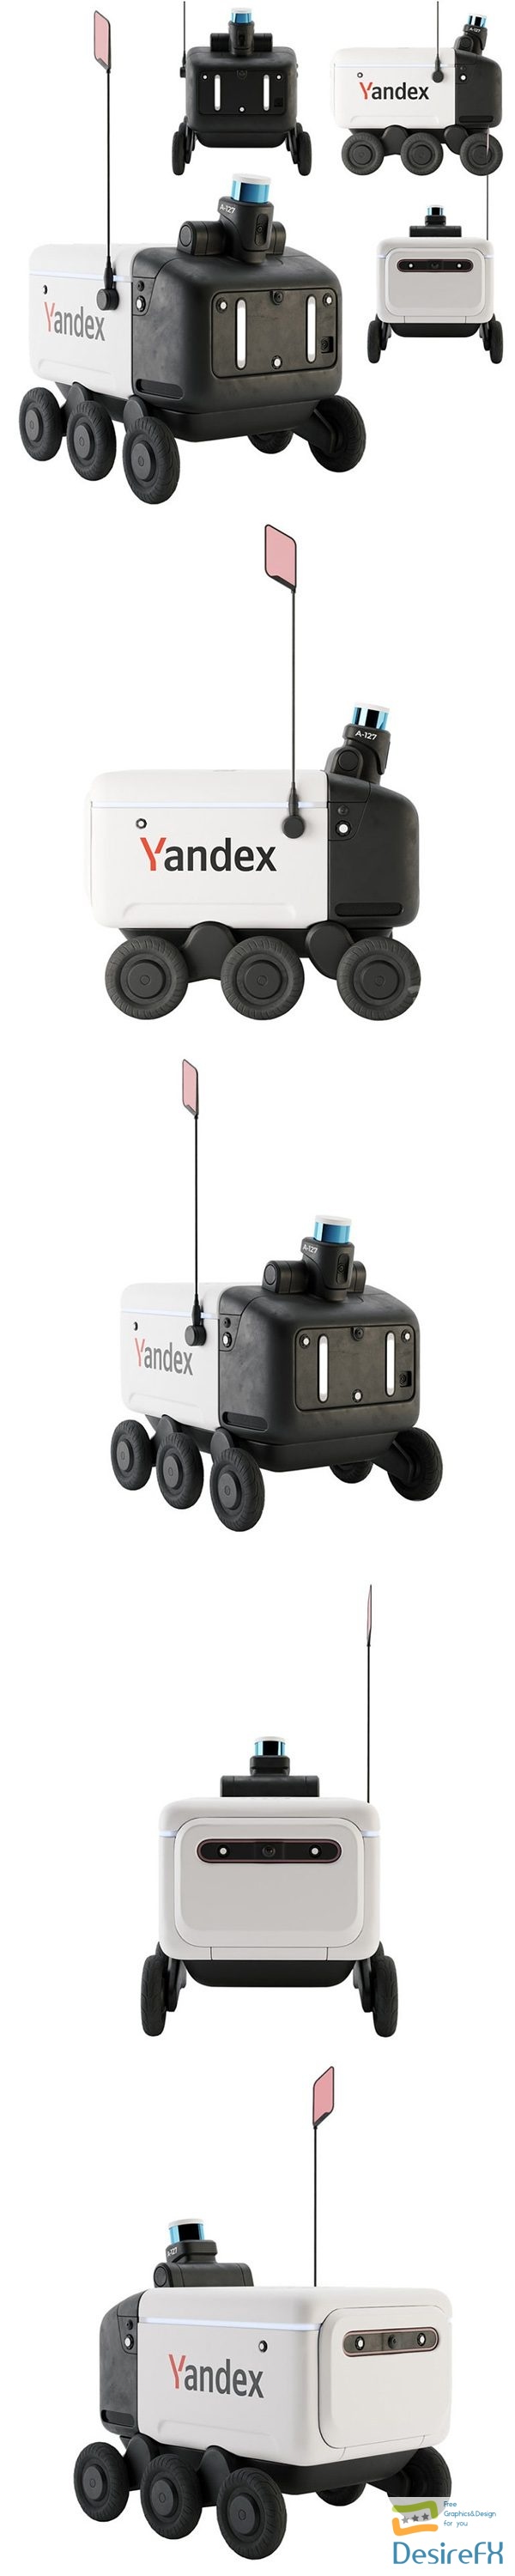 Yandex rover V3 3D Model